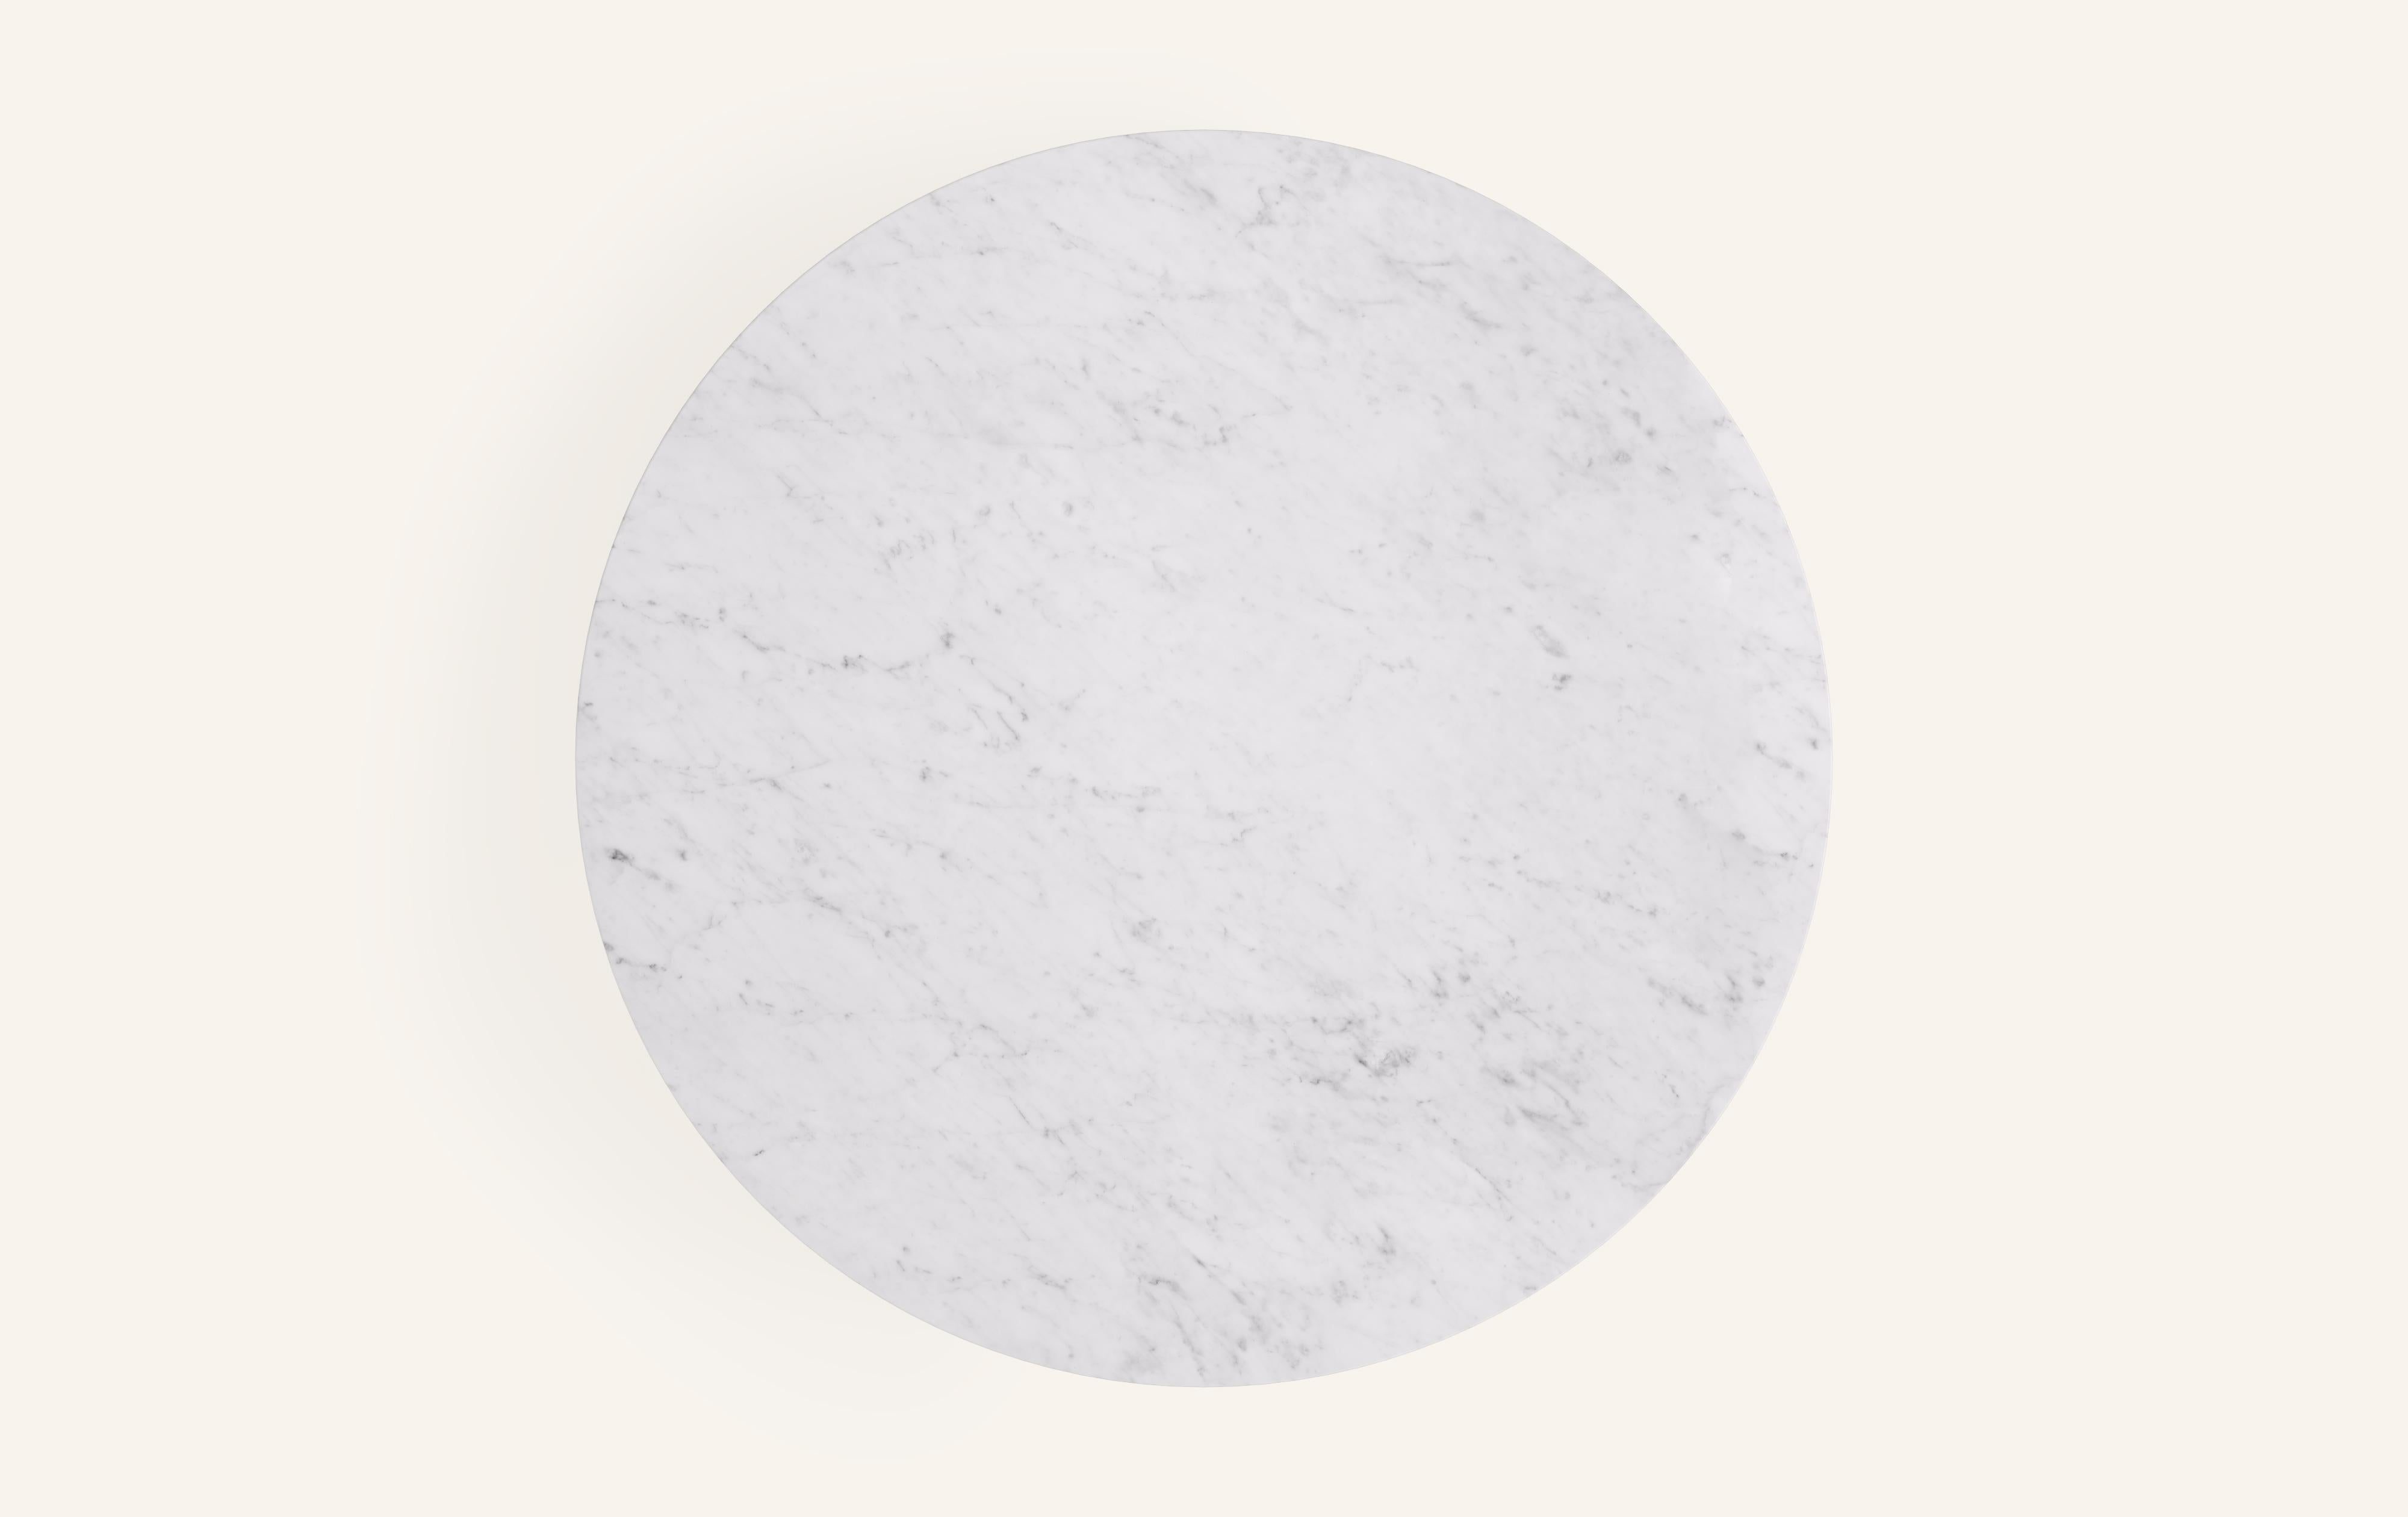 American FORM(LA) Sfera Round Coffee Table 48”L x 48”W x 16”H Carrara Bianco Marble For Sale